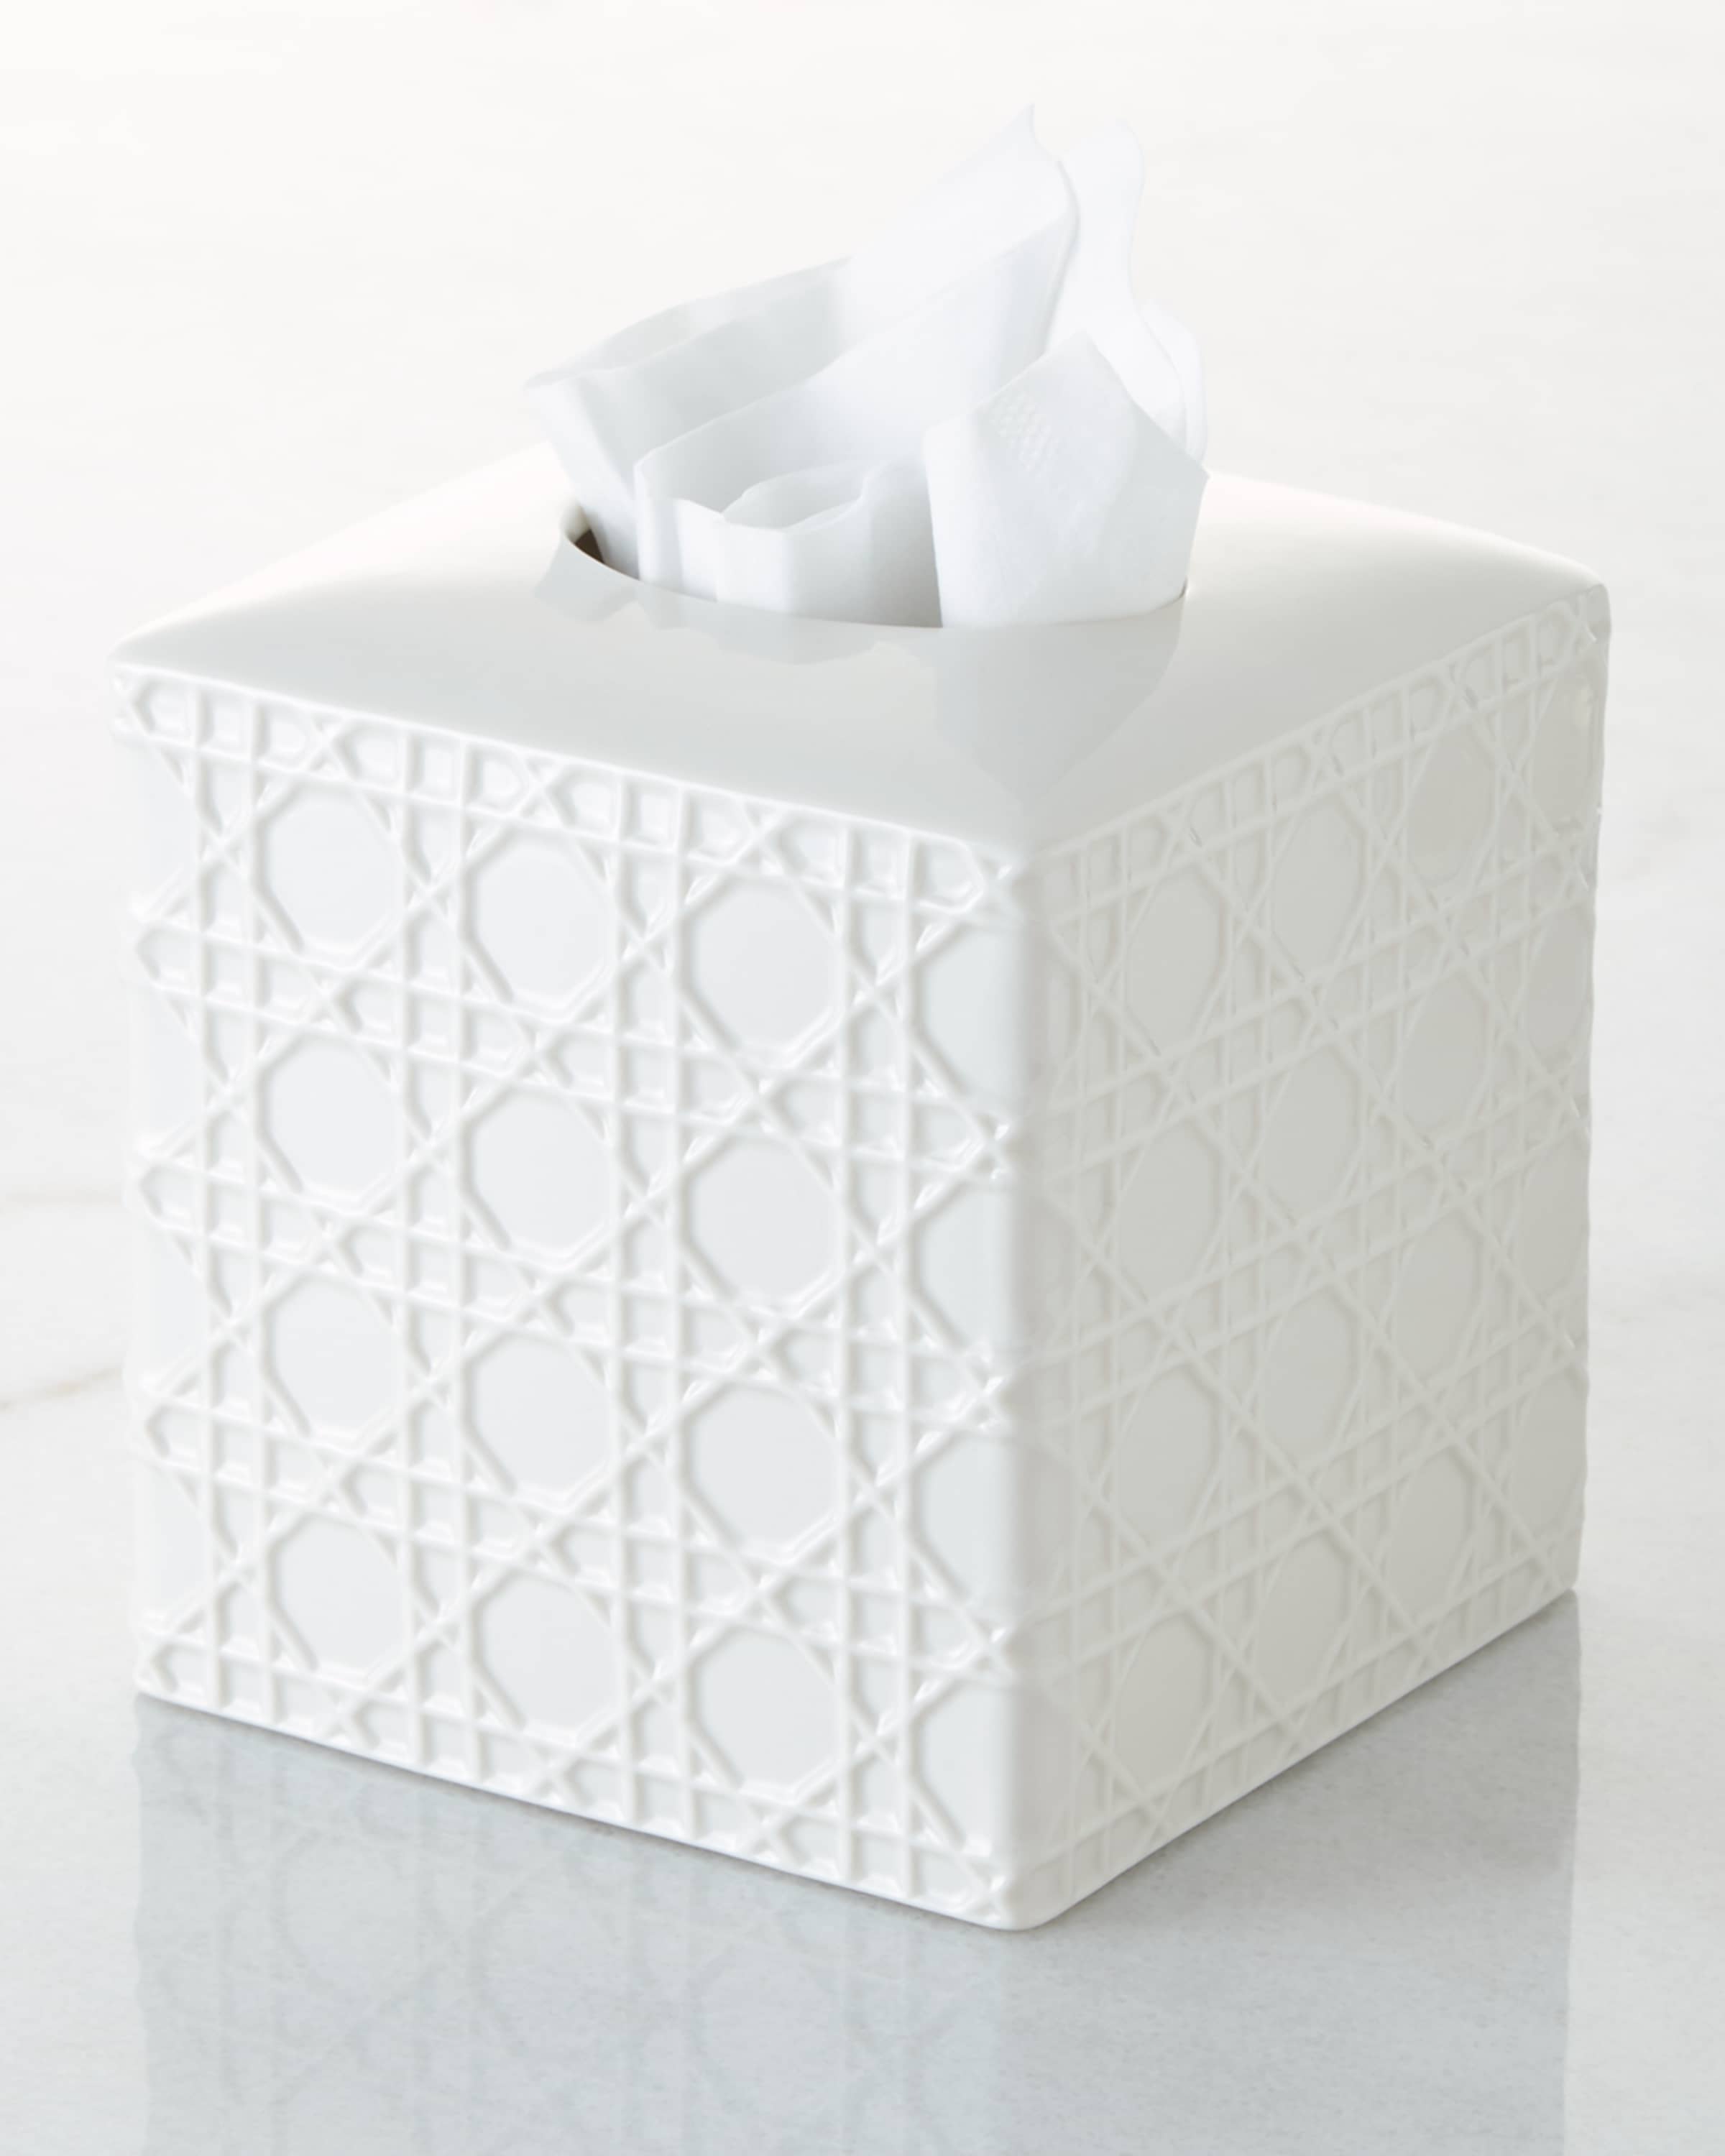 Kassatex Cane Embossed Porcelain Tissue Box Cover